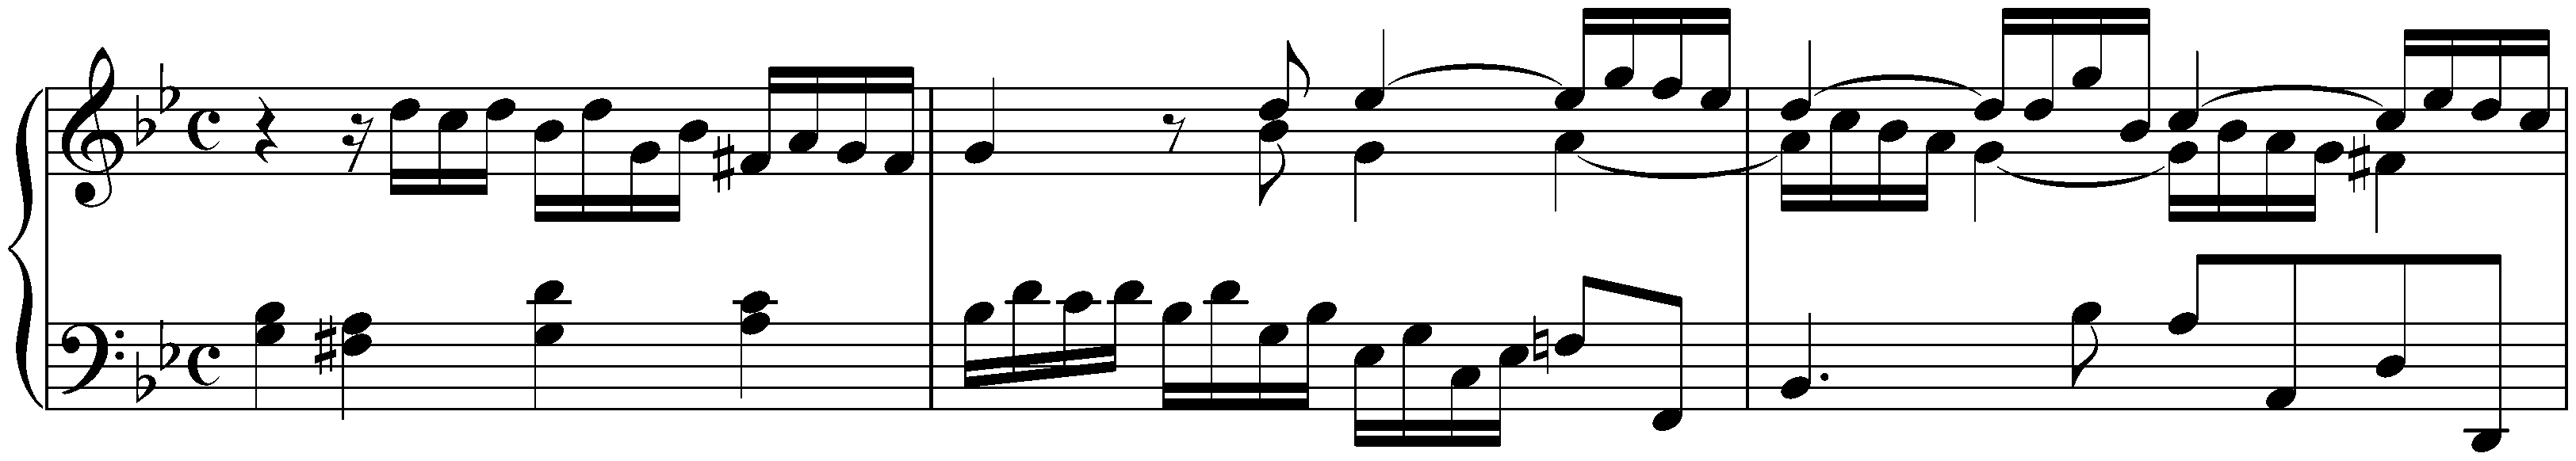 Preludio ed Allegro in G minor, HWV 574; 1. Preludio